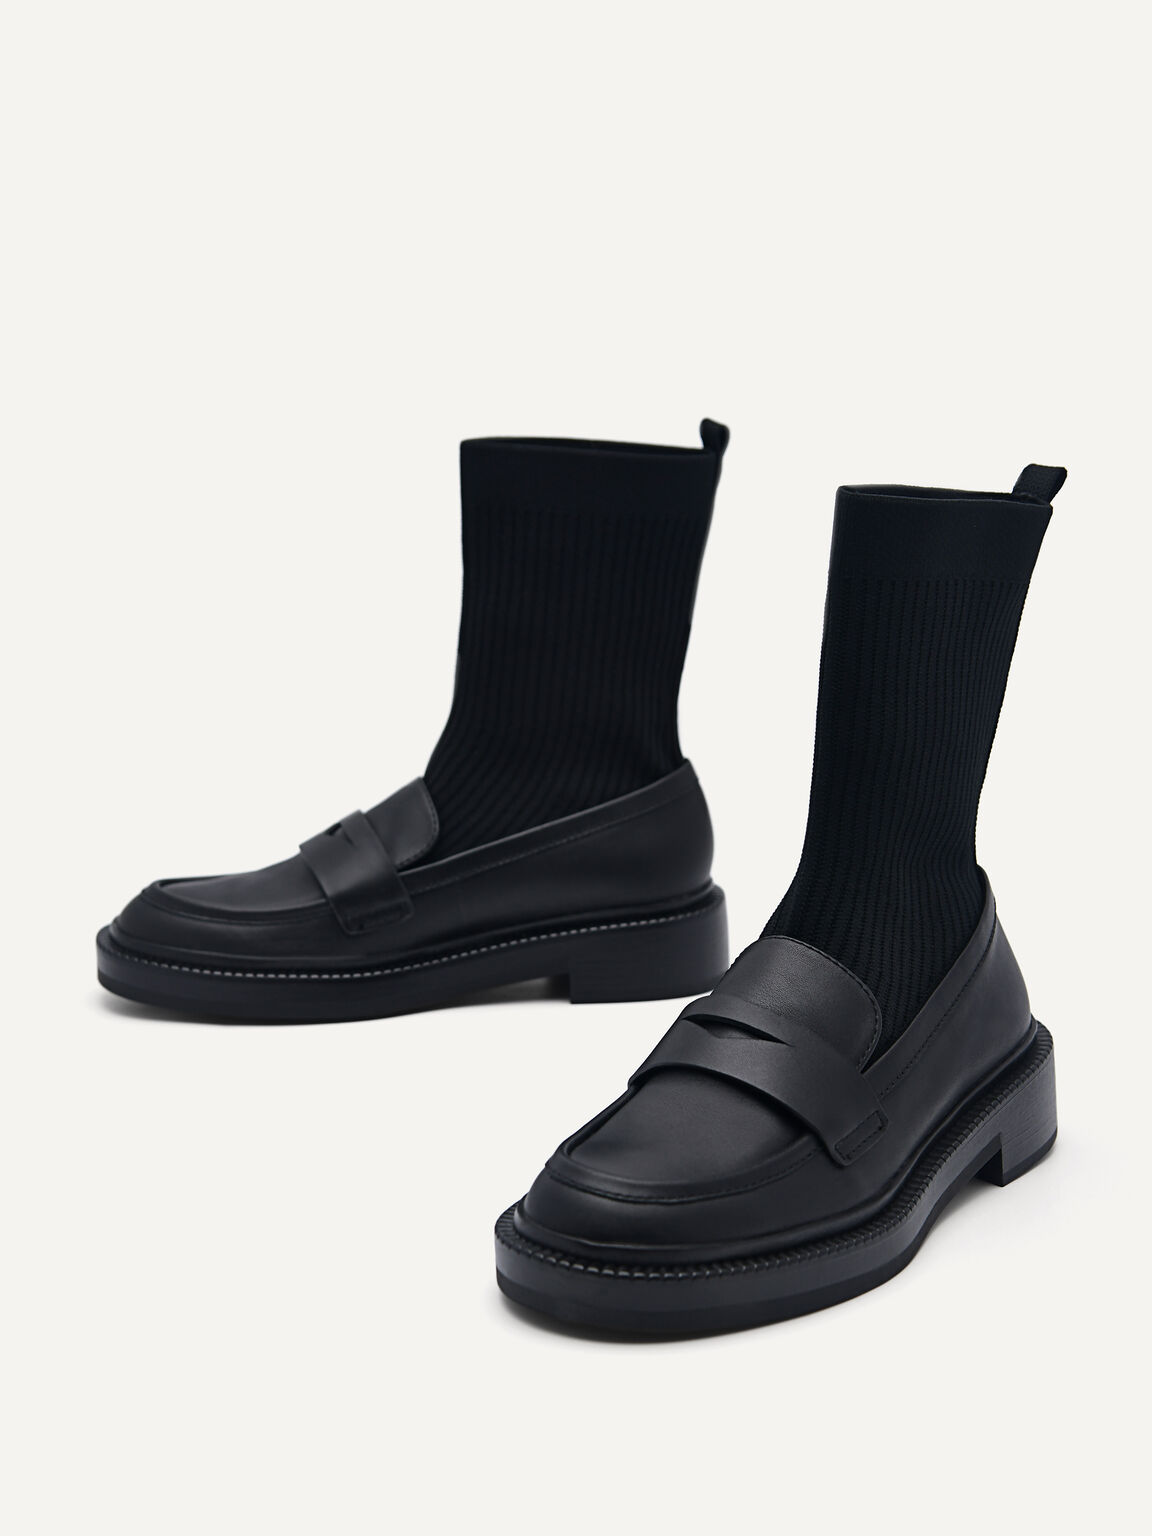 Gropius Boots, Black